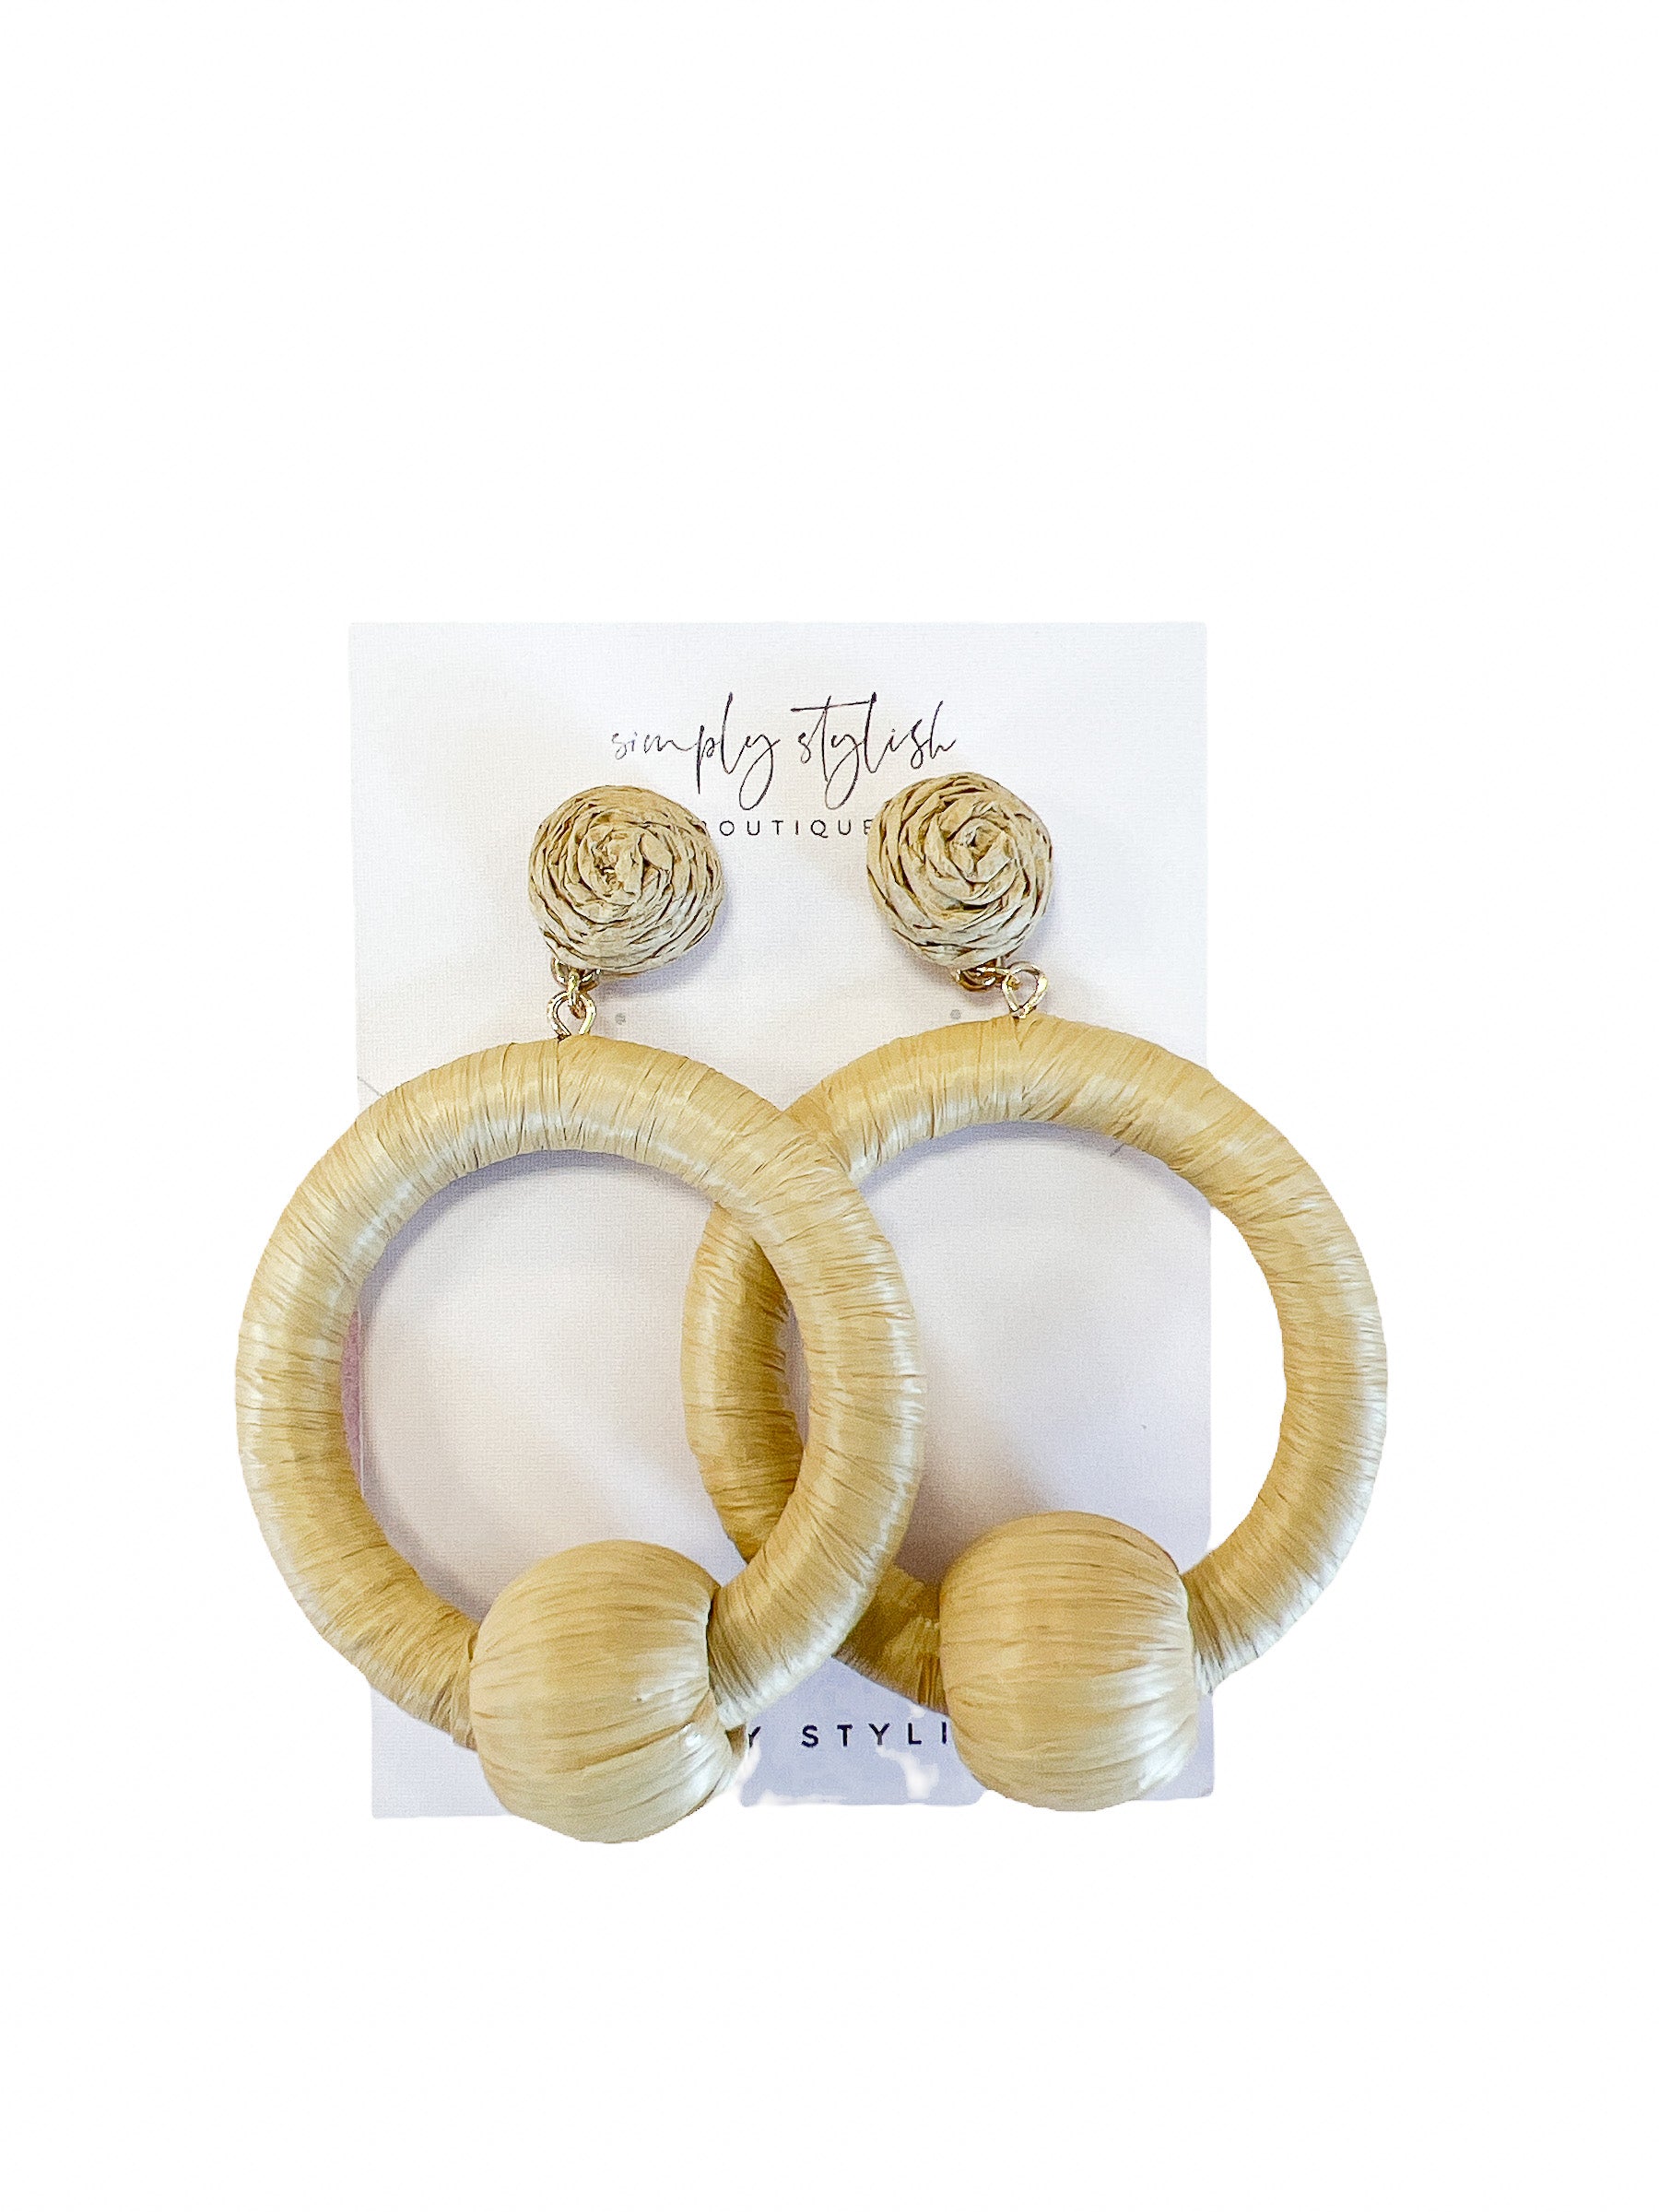 Lattan Circle Earrings-410 Jewelry-Simply Stylish Boutique-Simply Stylish Boutique | Women’s & Kid’s Fashion | Paducah, KY